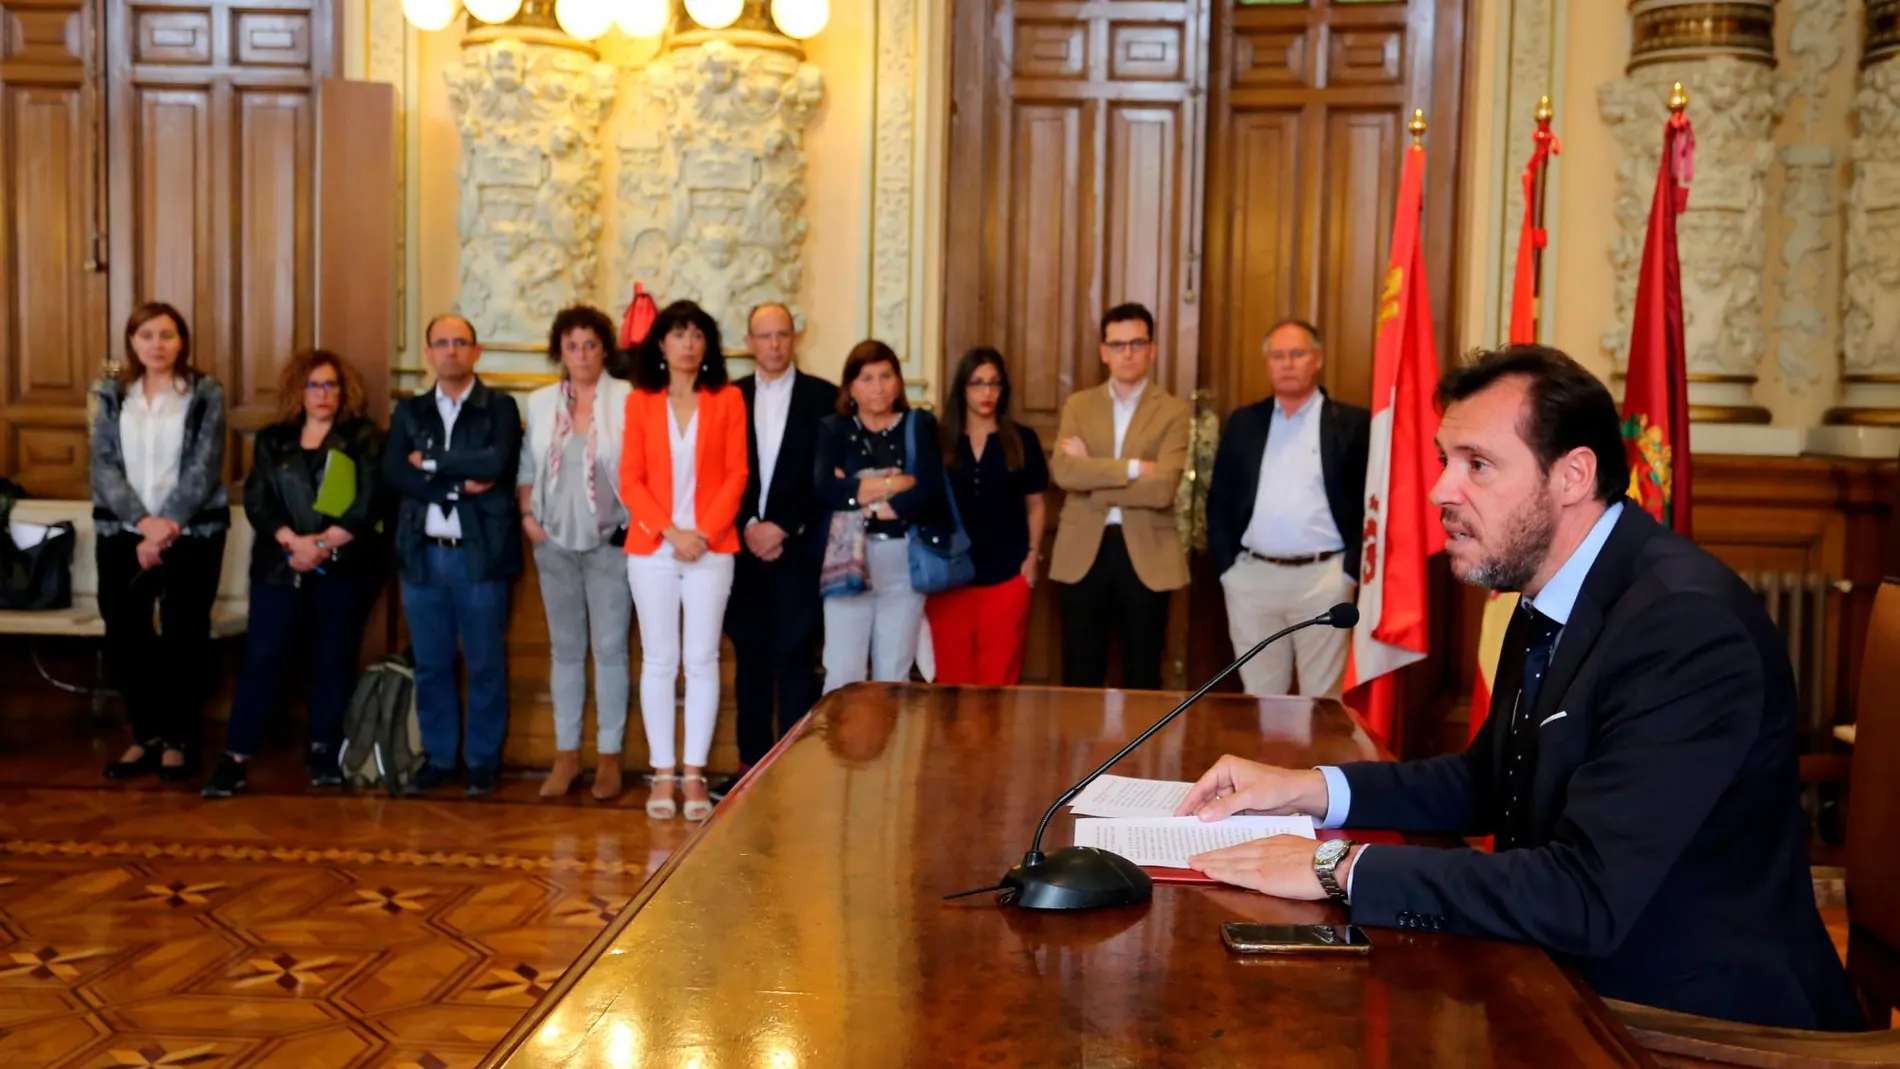 El alcalde de Valladolid en funciones, Óscar Puente, comparece ante los medios acompañado de sus compañeros socialistas en el Gobierno